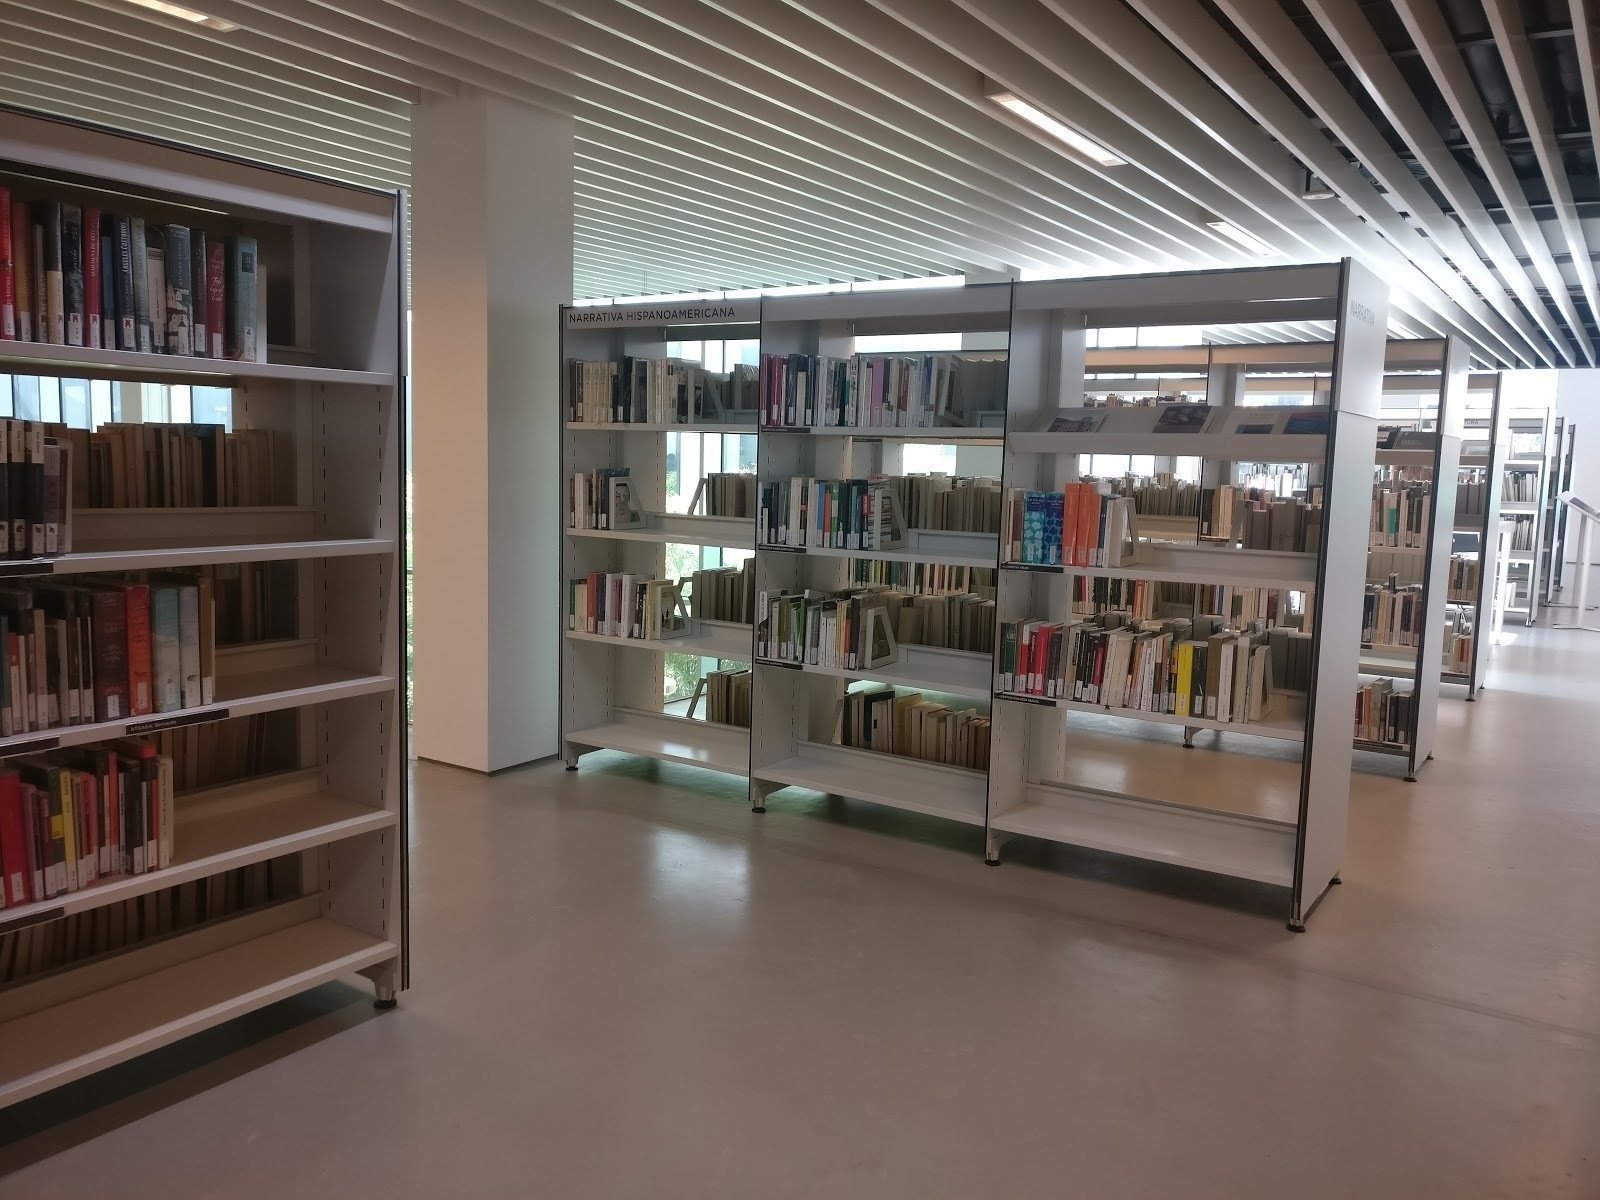 Biblioteca Camp de l'Arpa – Caterina Albert: A Work-Friendly Place in Barcelona